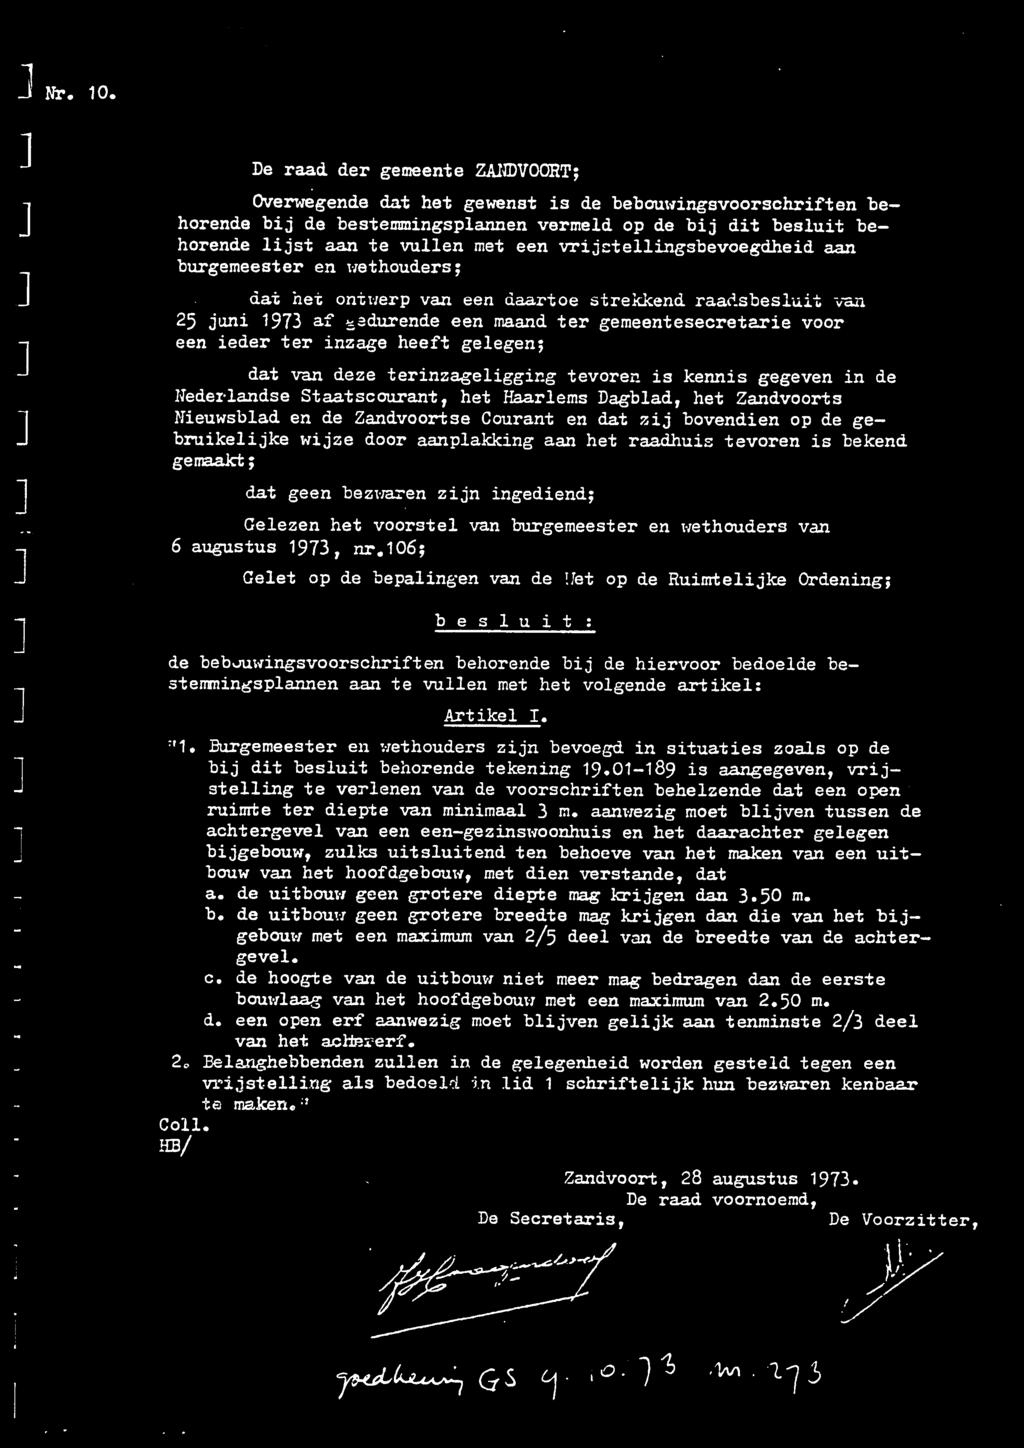 vrijctellingsbevoegdheid aan burgemeester en wethouders; dat het ontwerp van een daartoe strekkend raadsbesluit van 25 juni 1973 af edurende een maand ter gemeentesecretarie voor een ieder ter inzage